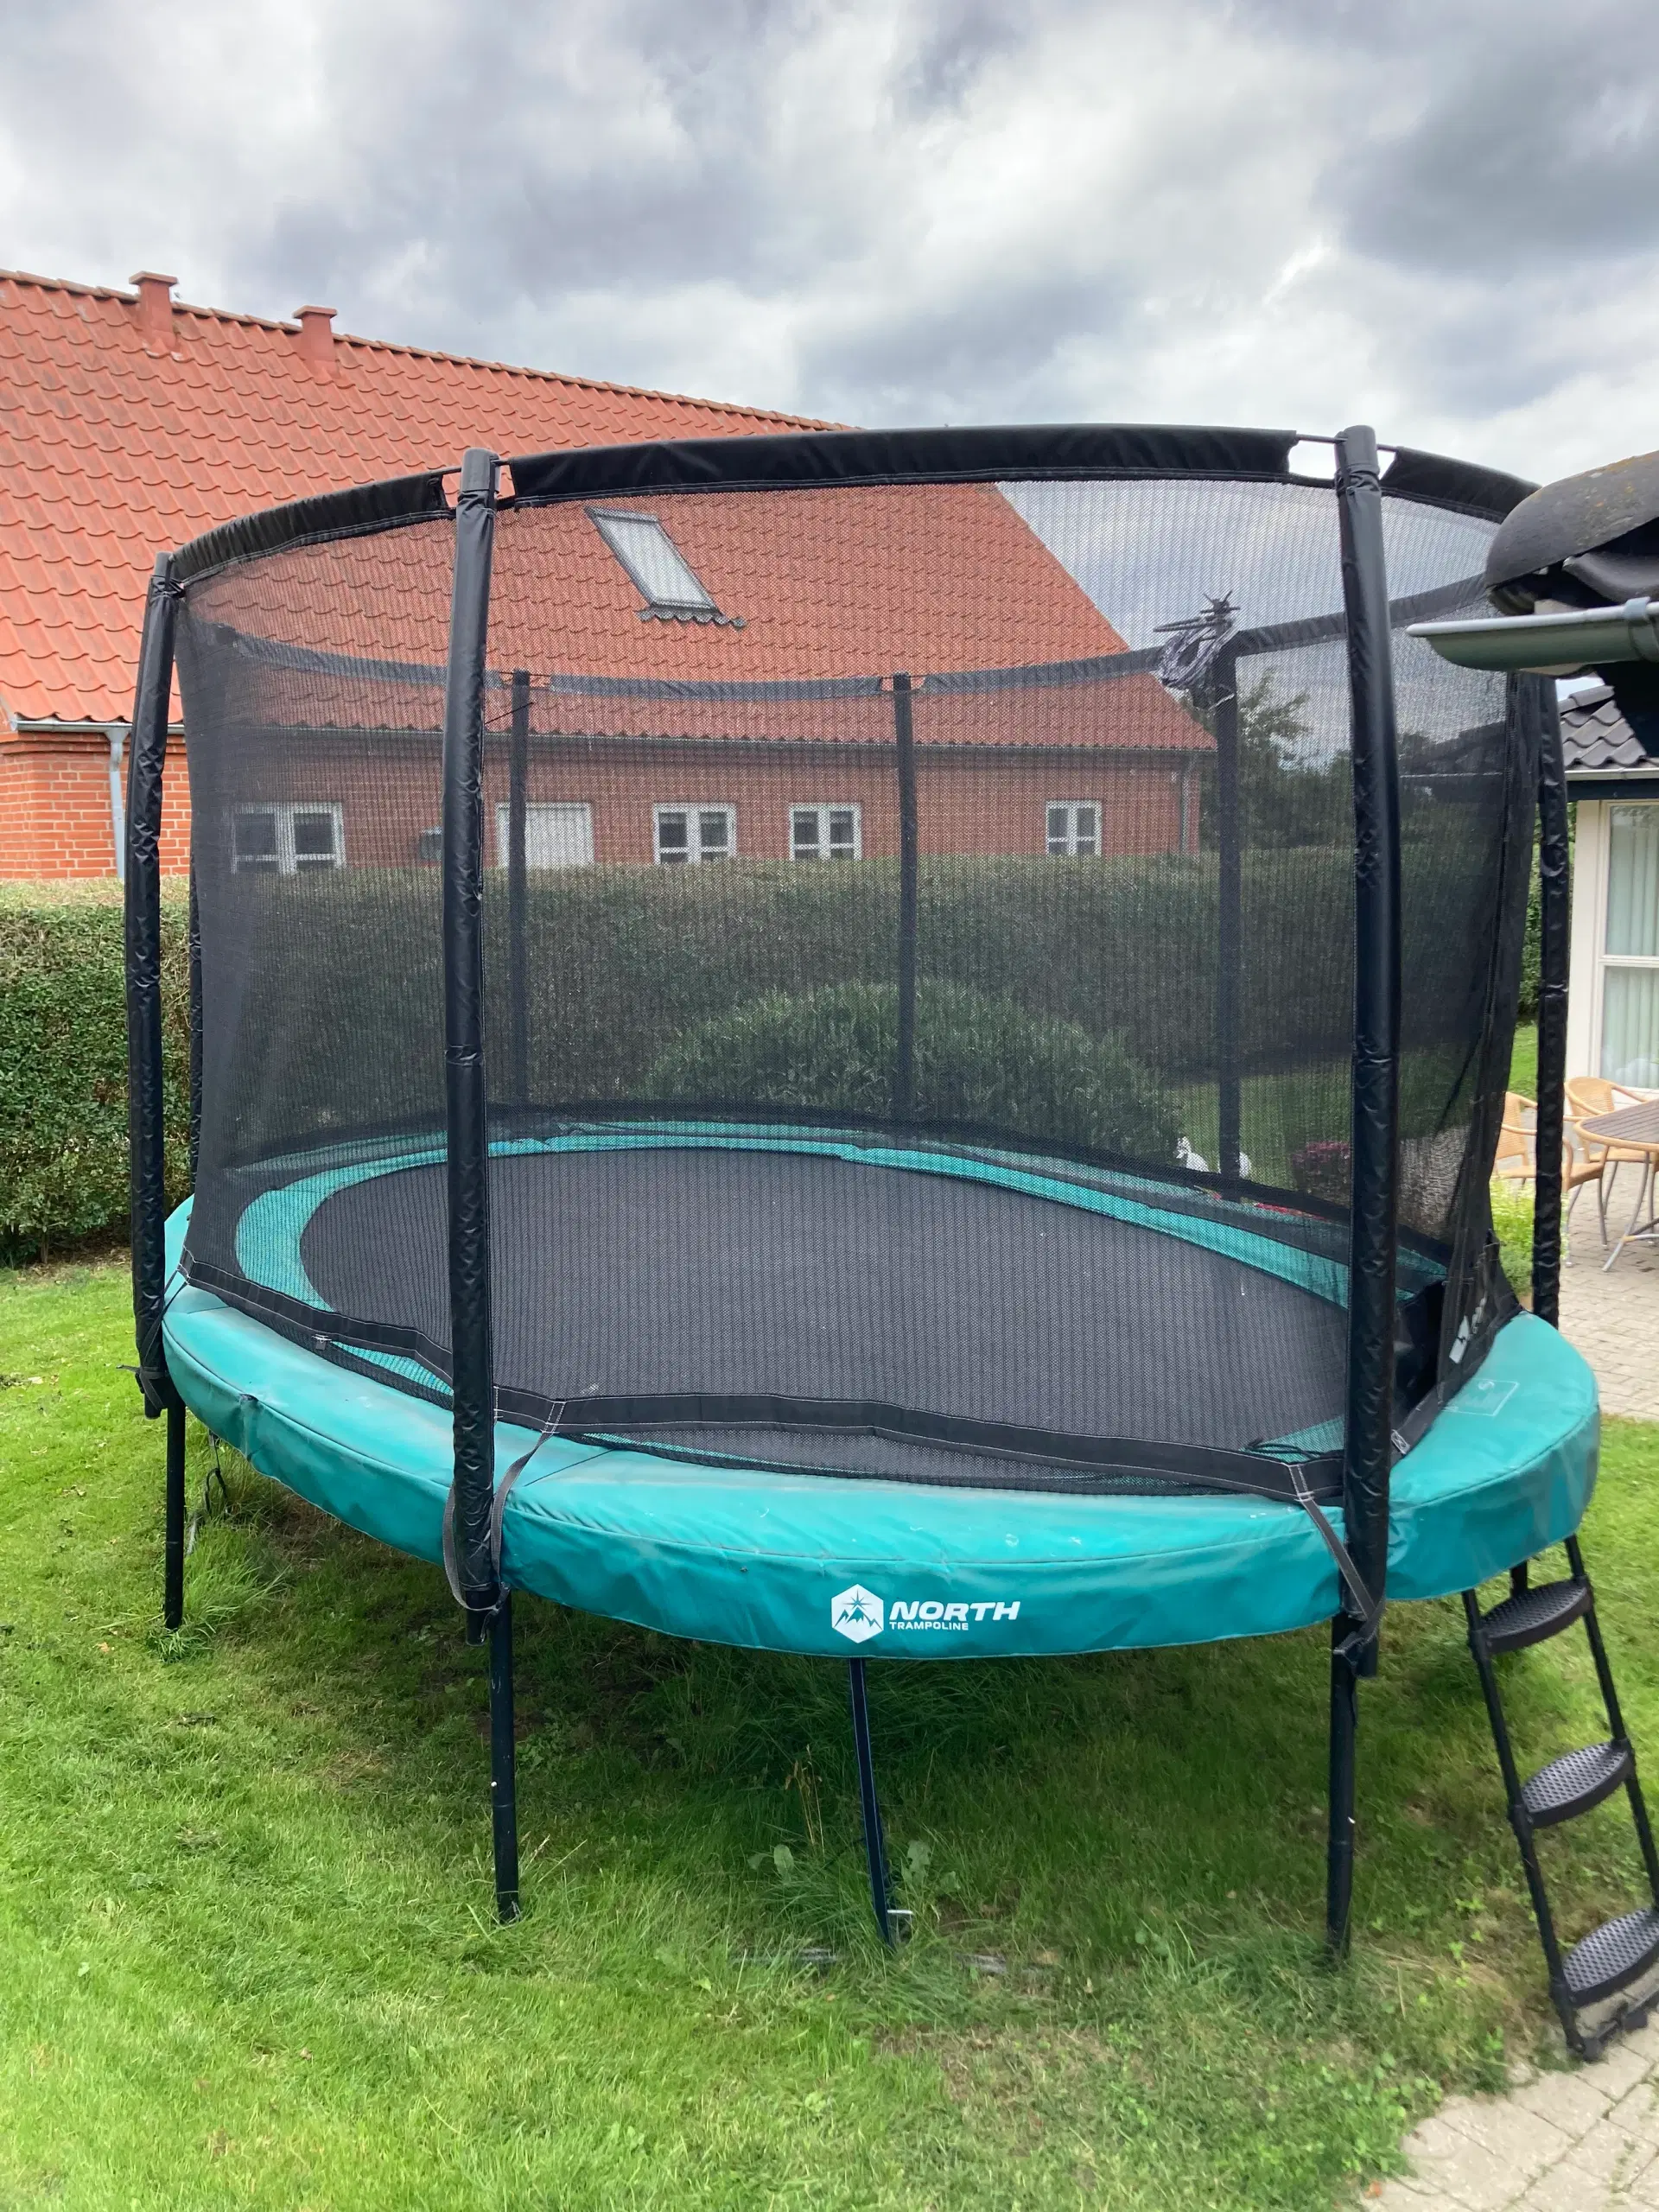 North trampolin sælges | Mårslet GulogGratis.dk